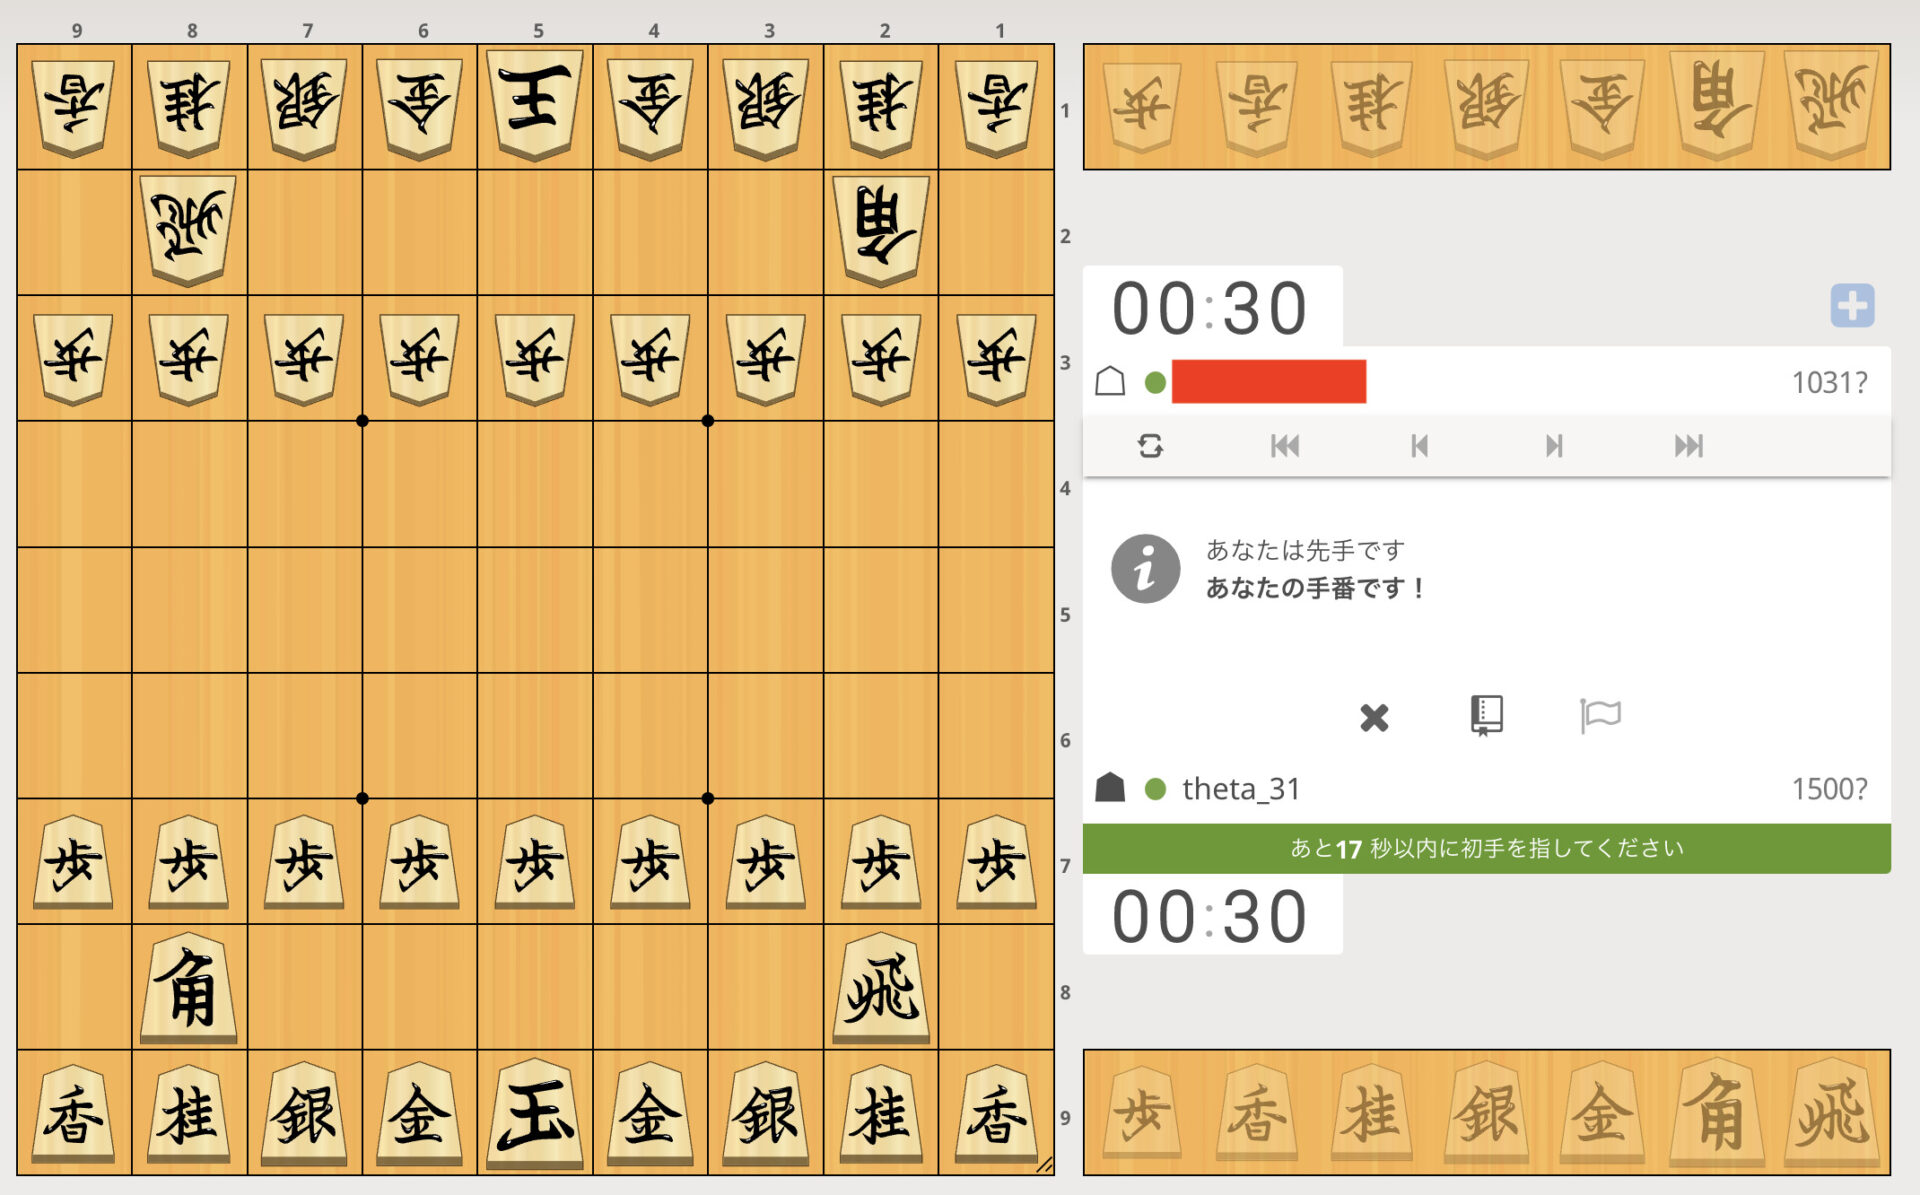 lishogi-match-1